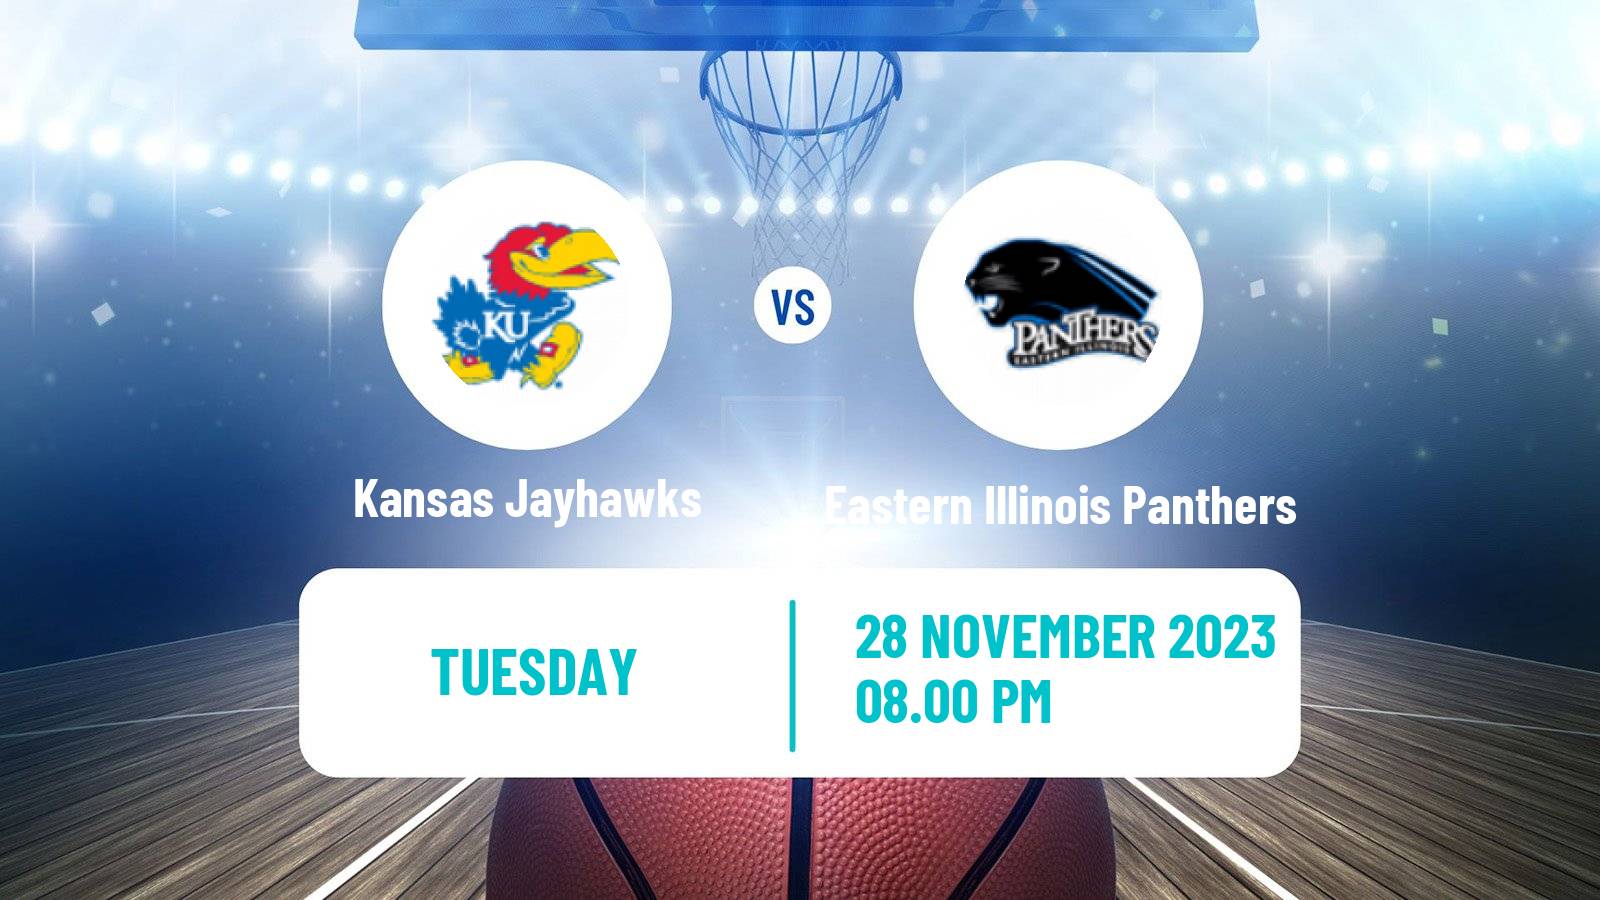 Basketball NCAA College Basketball Kansas Jayhawks - Eastern Illinois Panthers